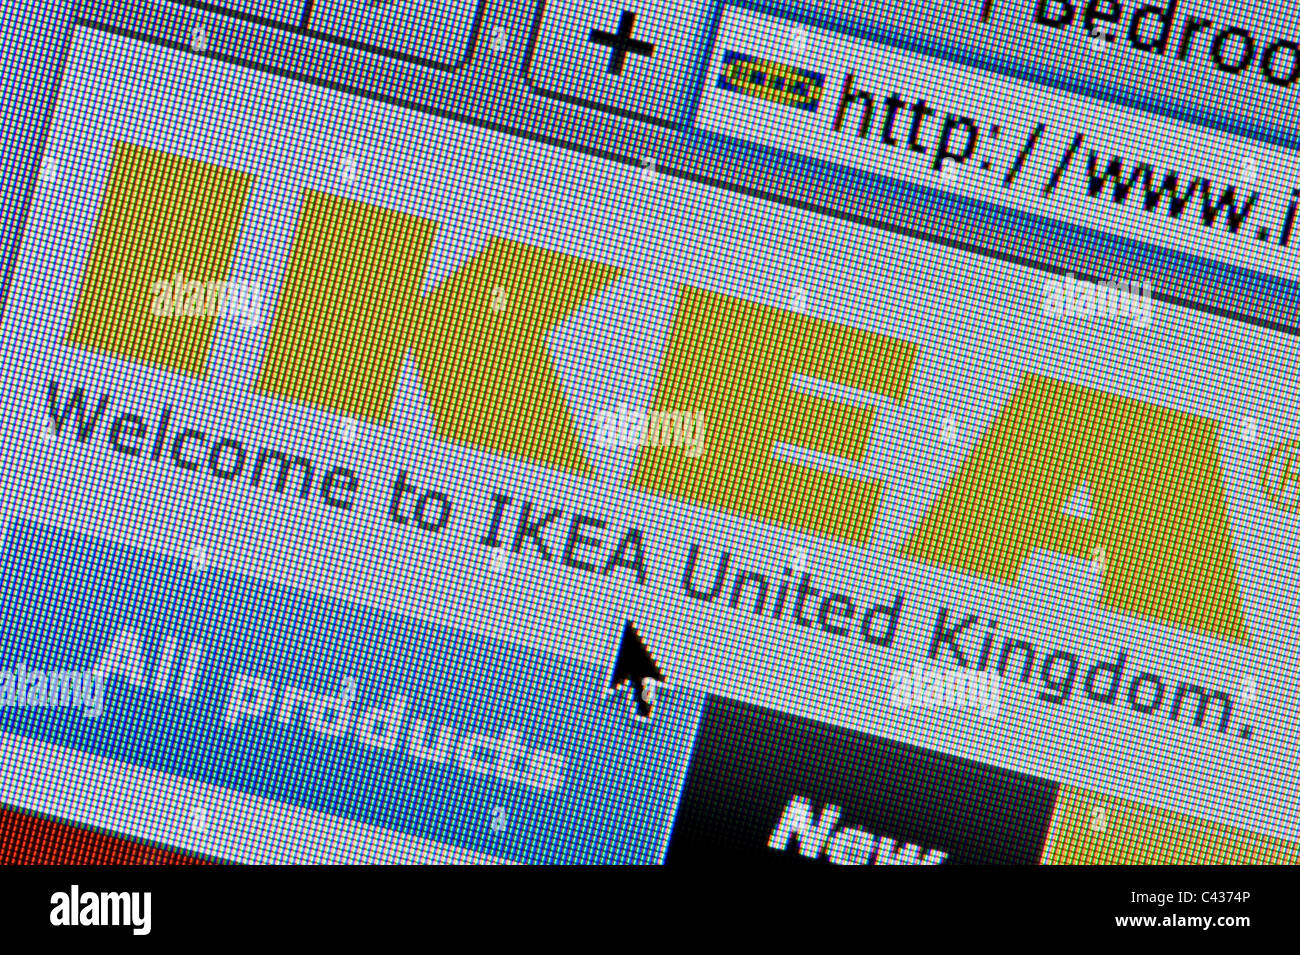 Chiusura del logo Ikea come visto sul suo sito web. (Solo uso editoriale: -print, TV, e-book e Redazione sito web). Foto Stock